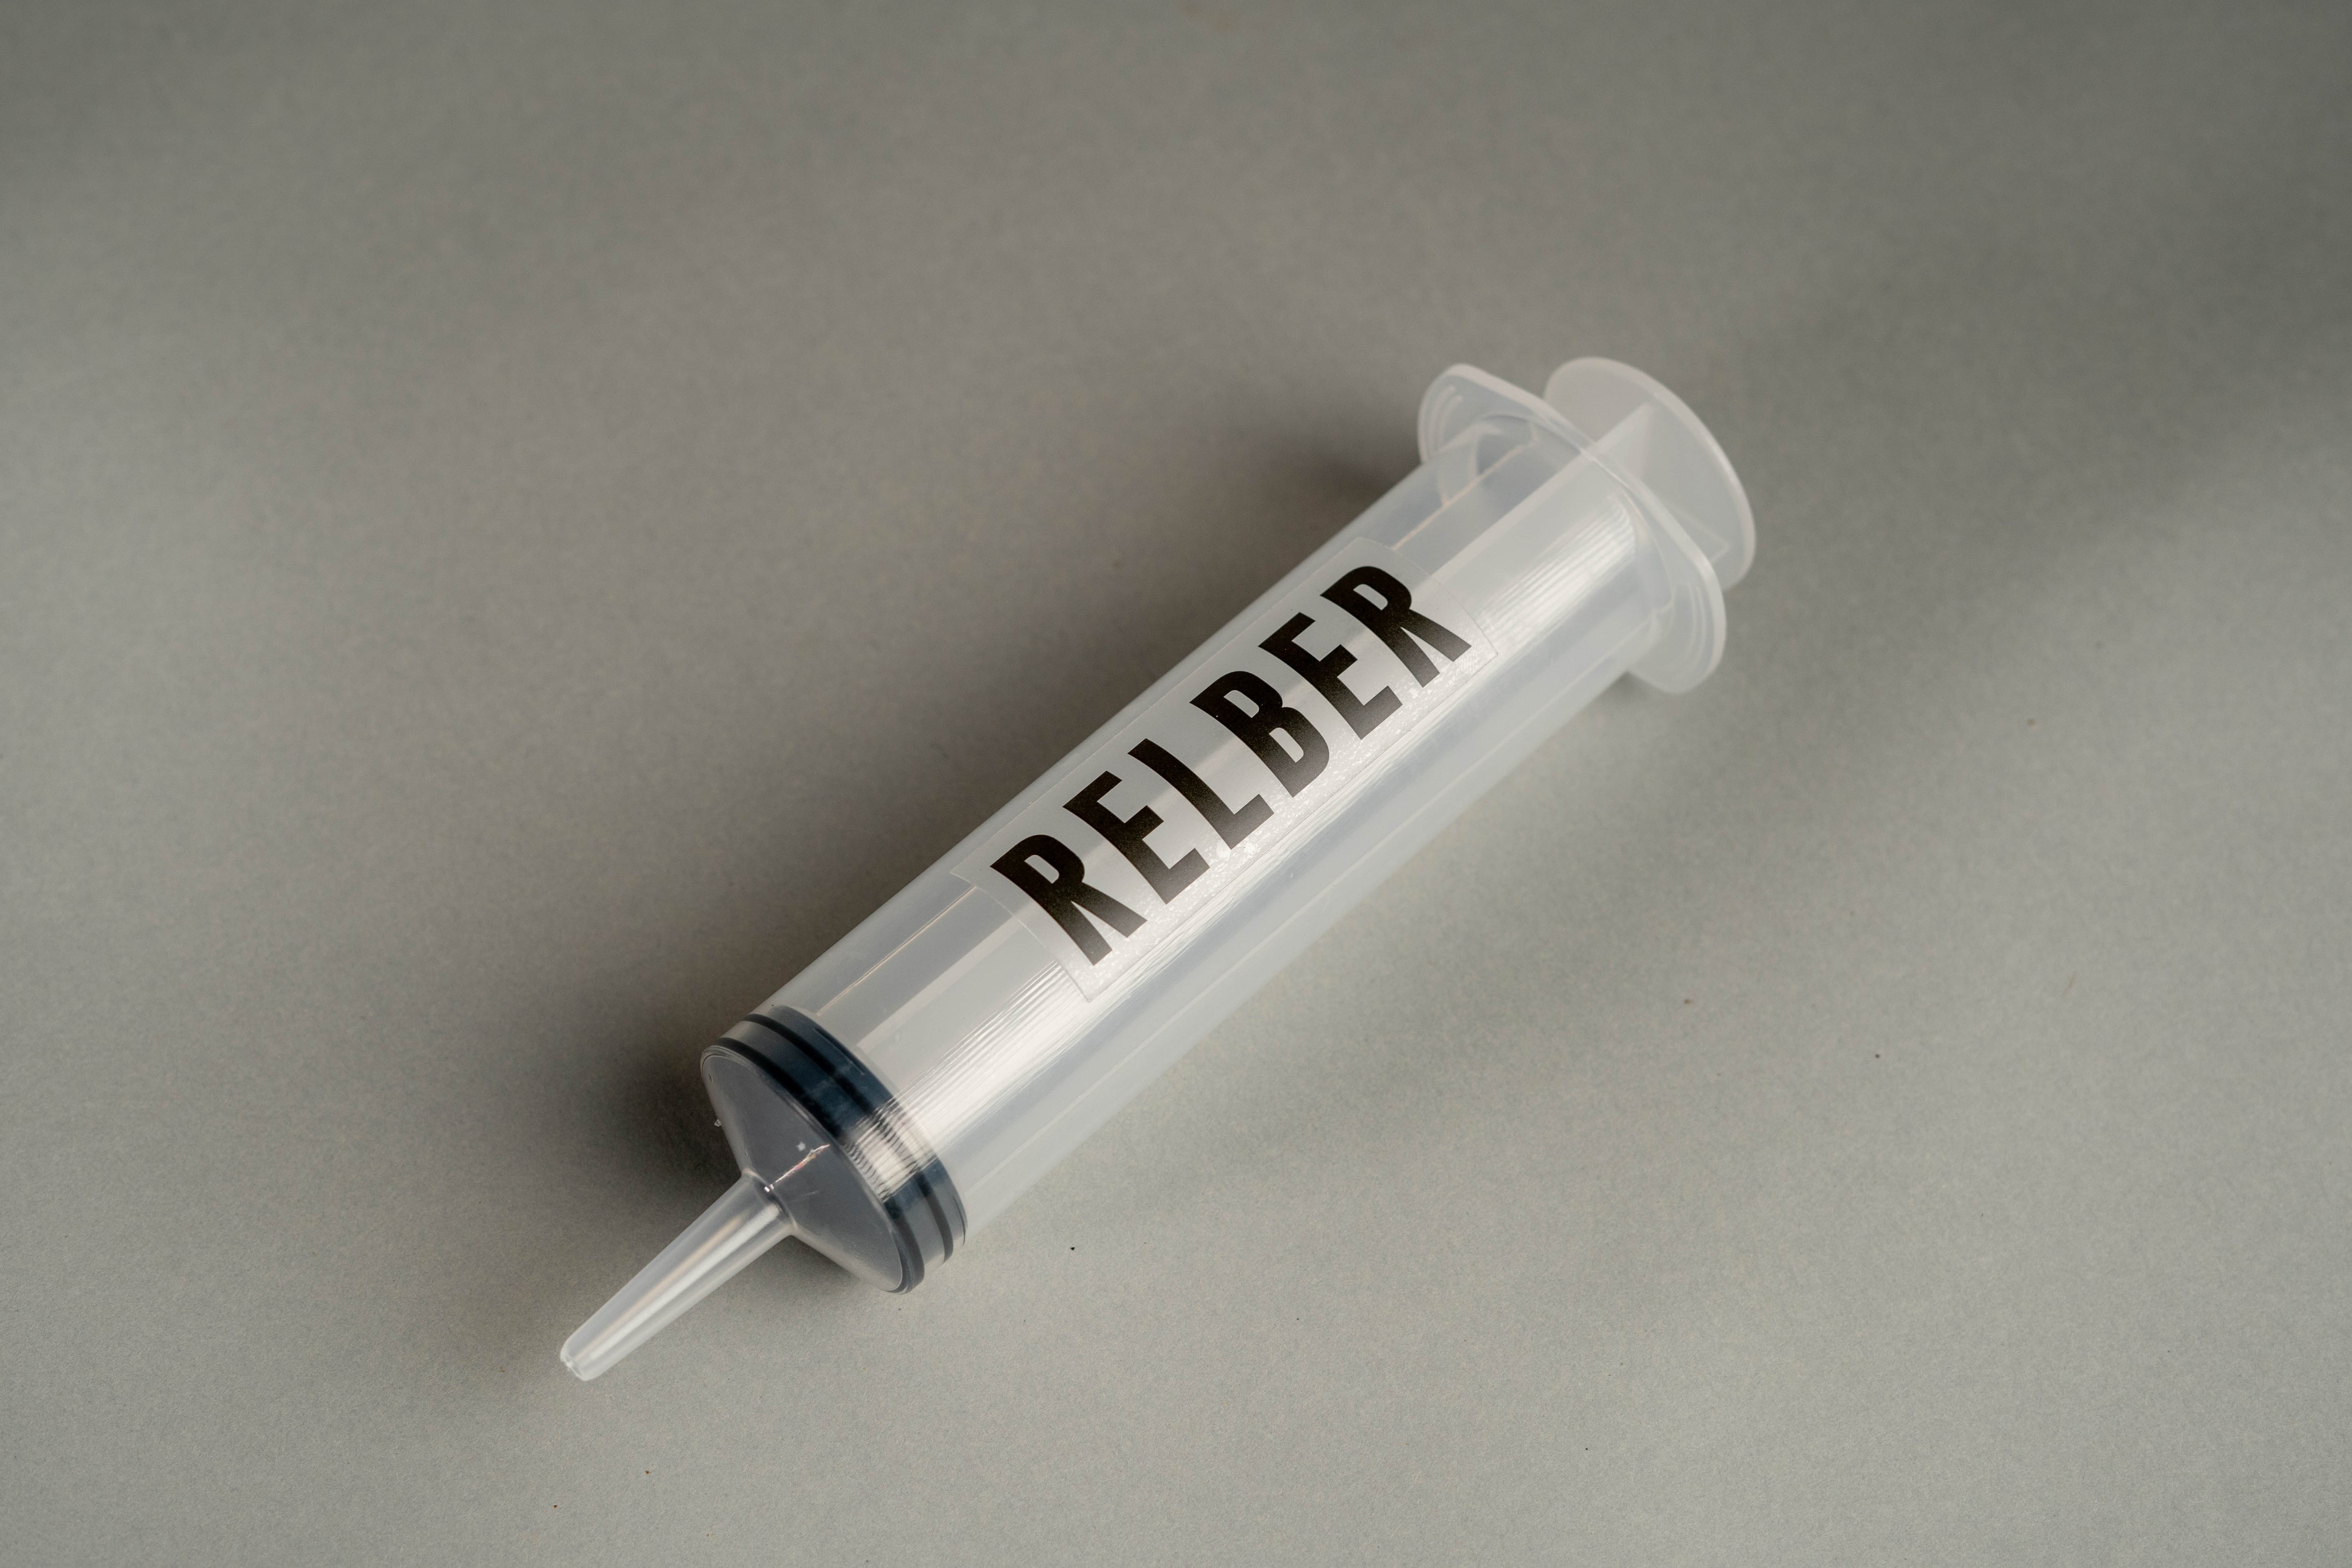 Sealant syringe